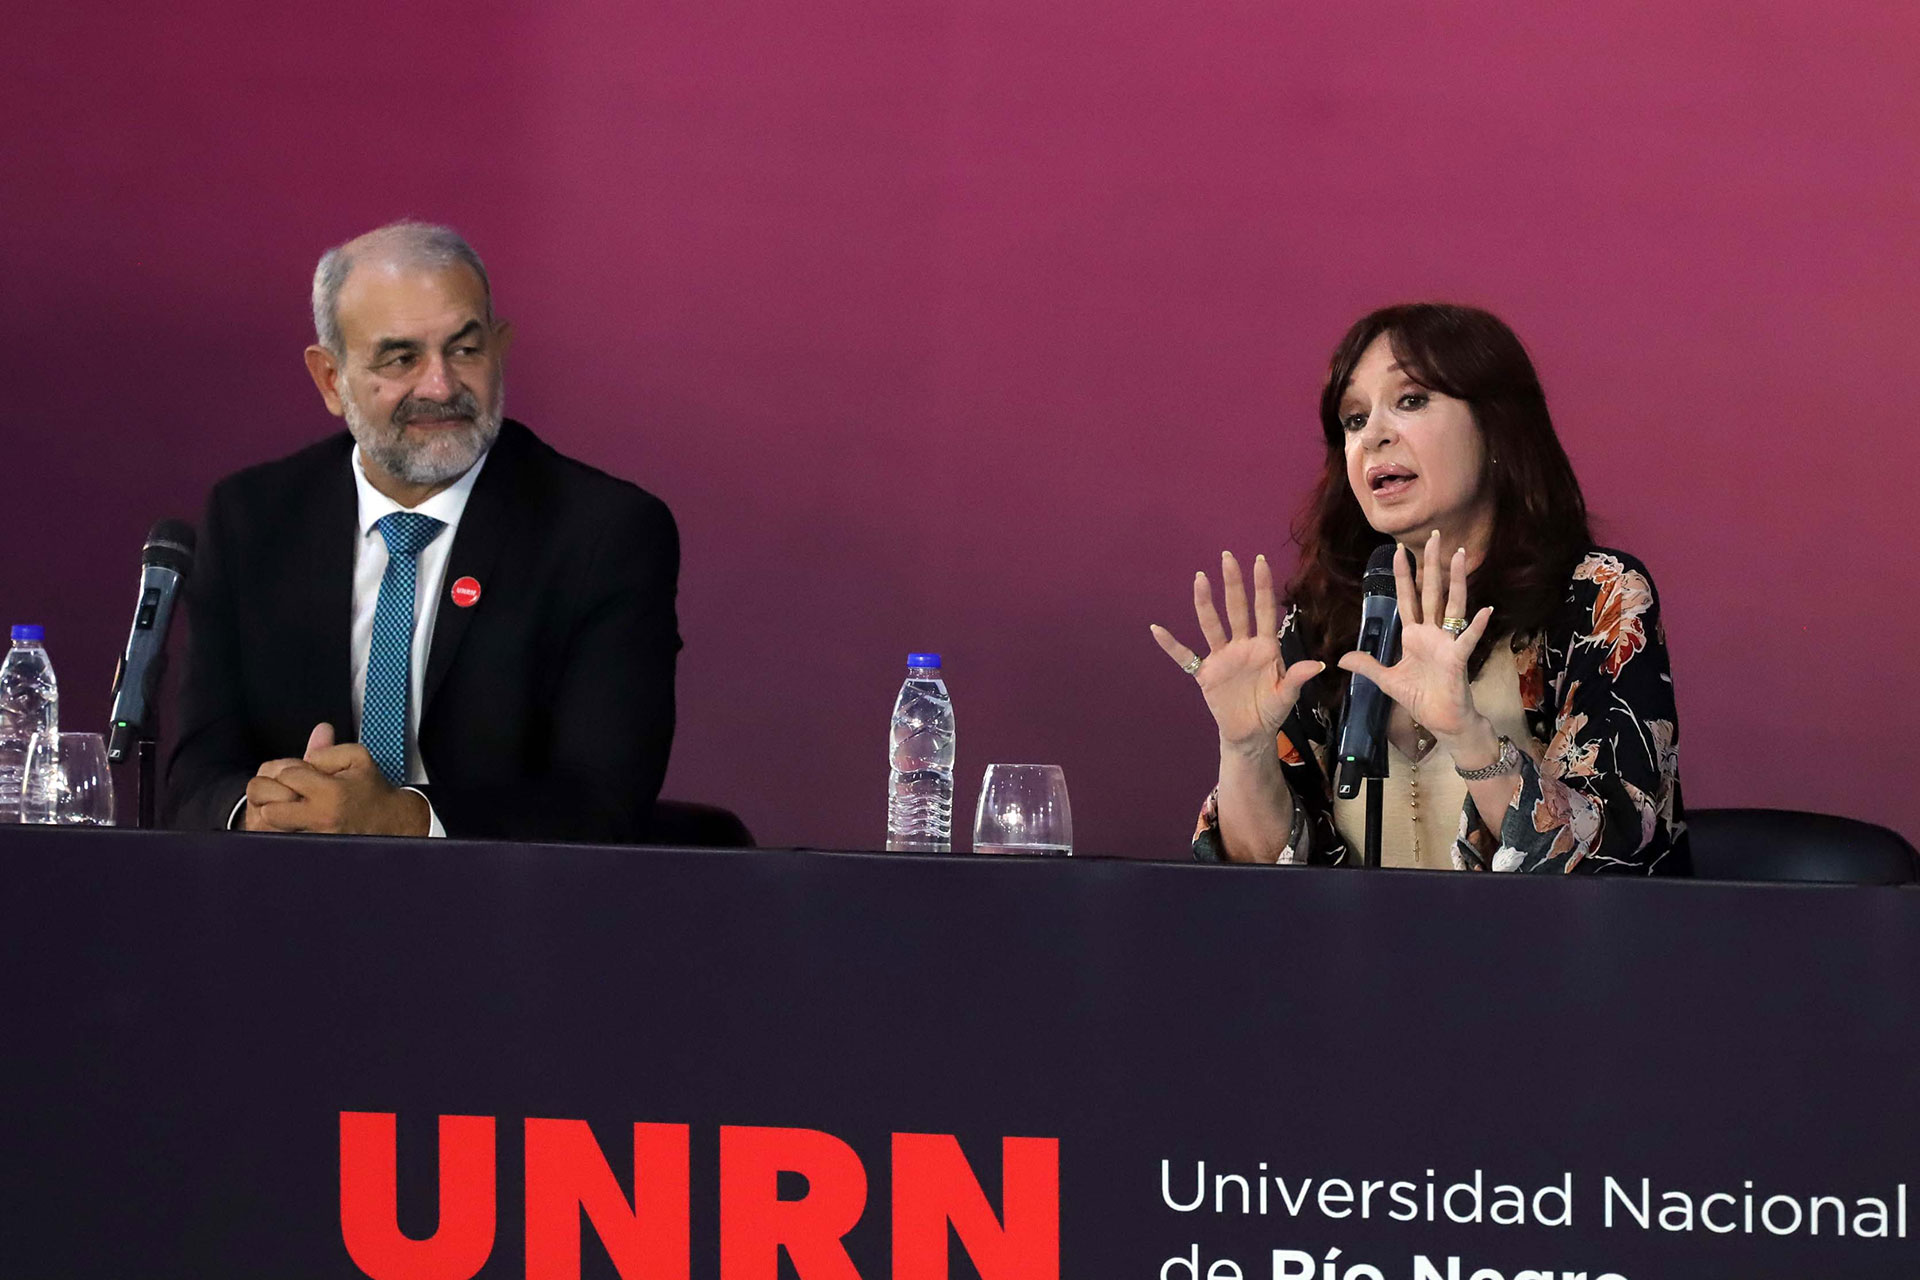 CFK gira en su círculo: niega el Estado de democracia y alienta el “Luche y vuelve” con eco de dictadura